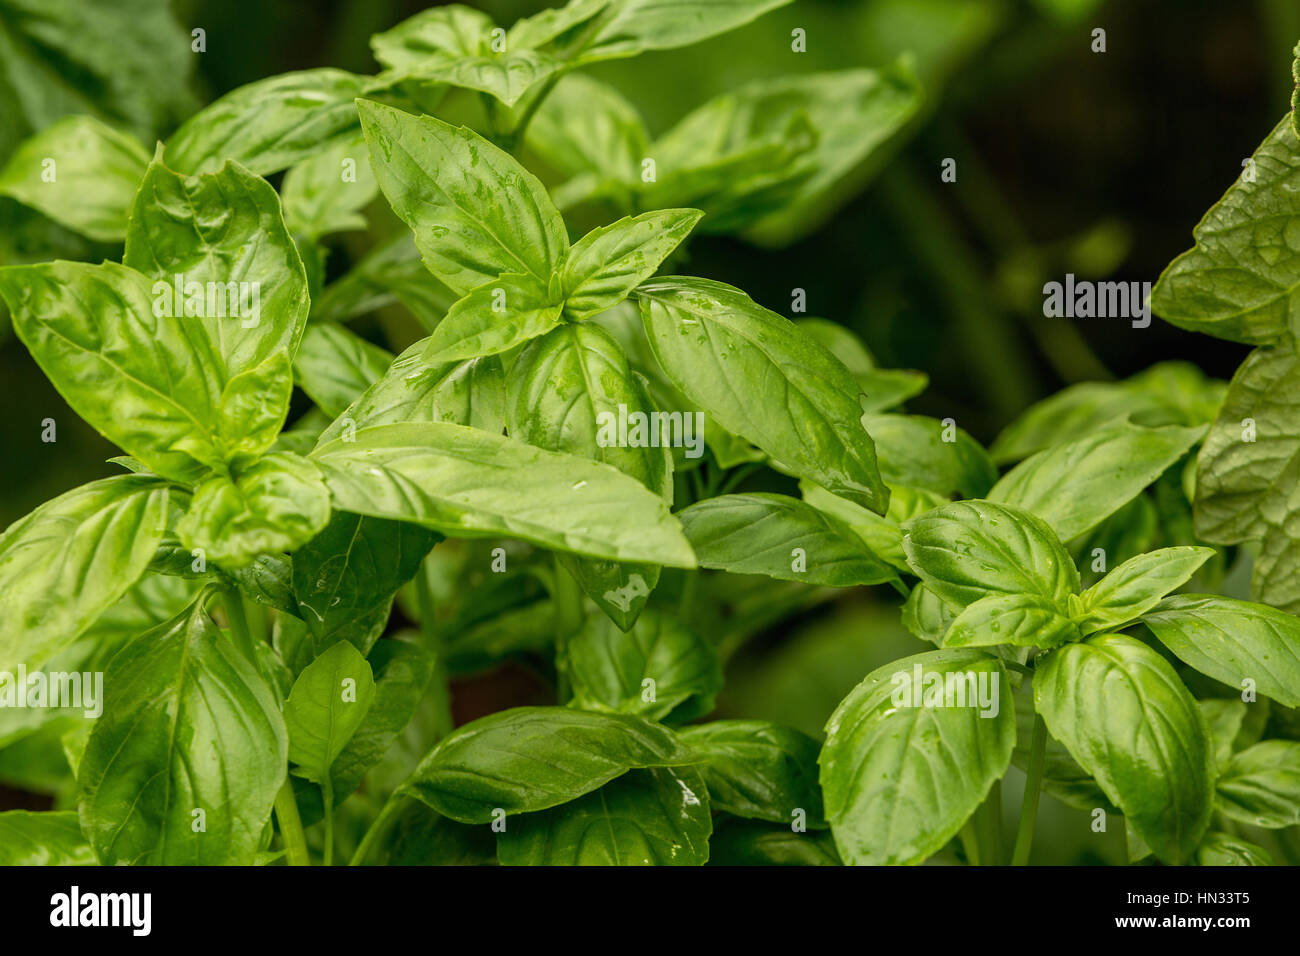 Hojas de albahaca fresca, hojas de albahaca verde listo para degustar las sabrosas recetas de cocina, fondo de hierbas Foto de stock